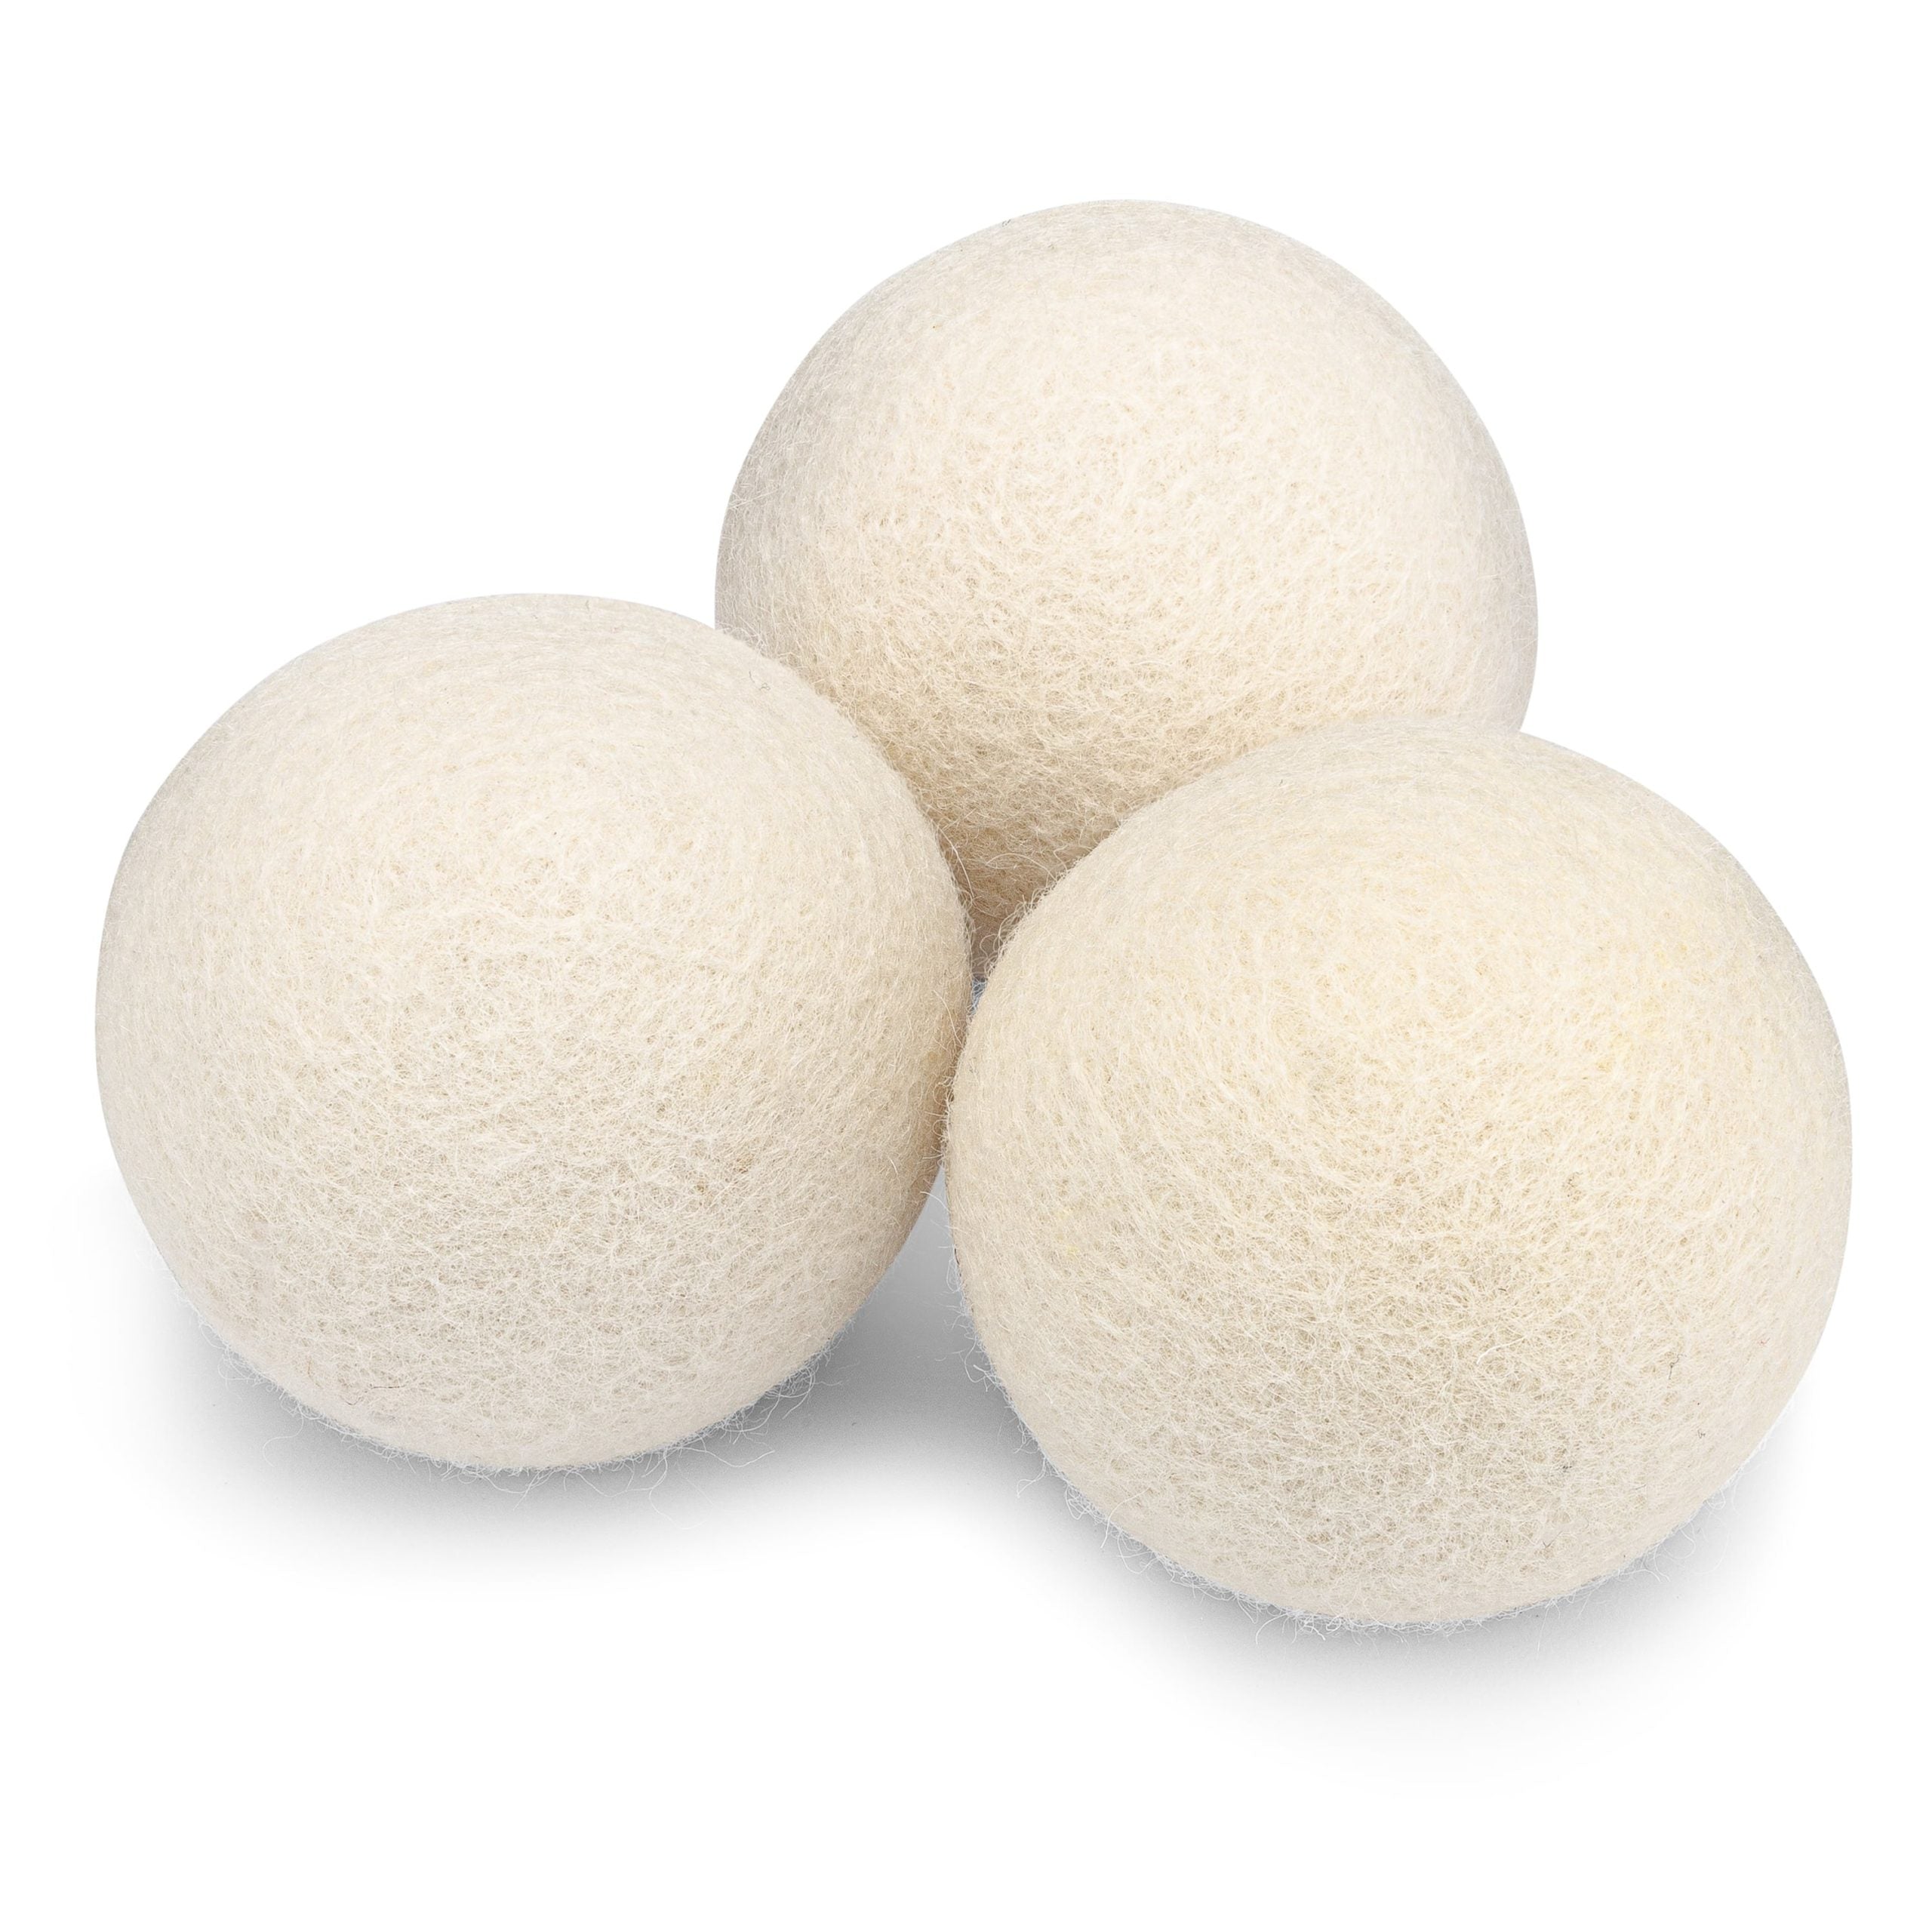 Wool Dryer Balls, A Natural Alternative – Rocky Mountain Oils